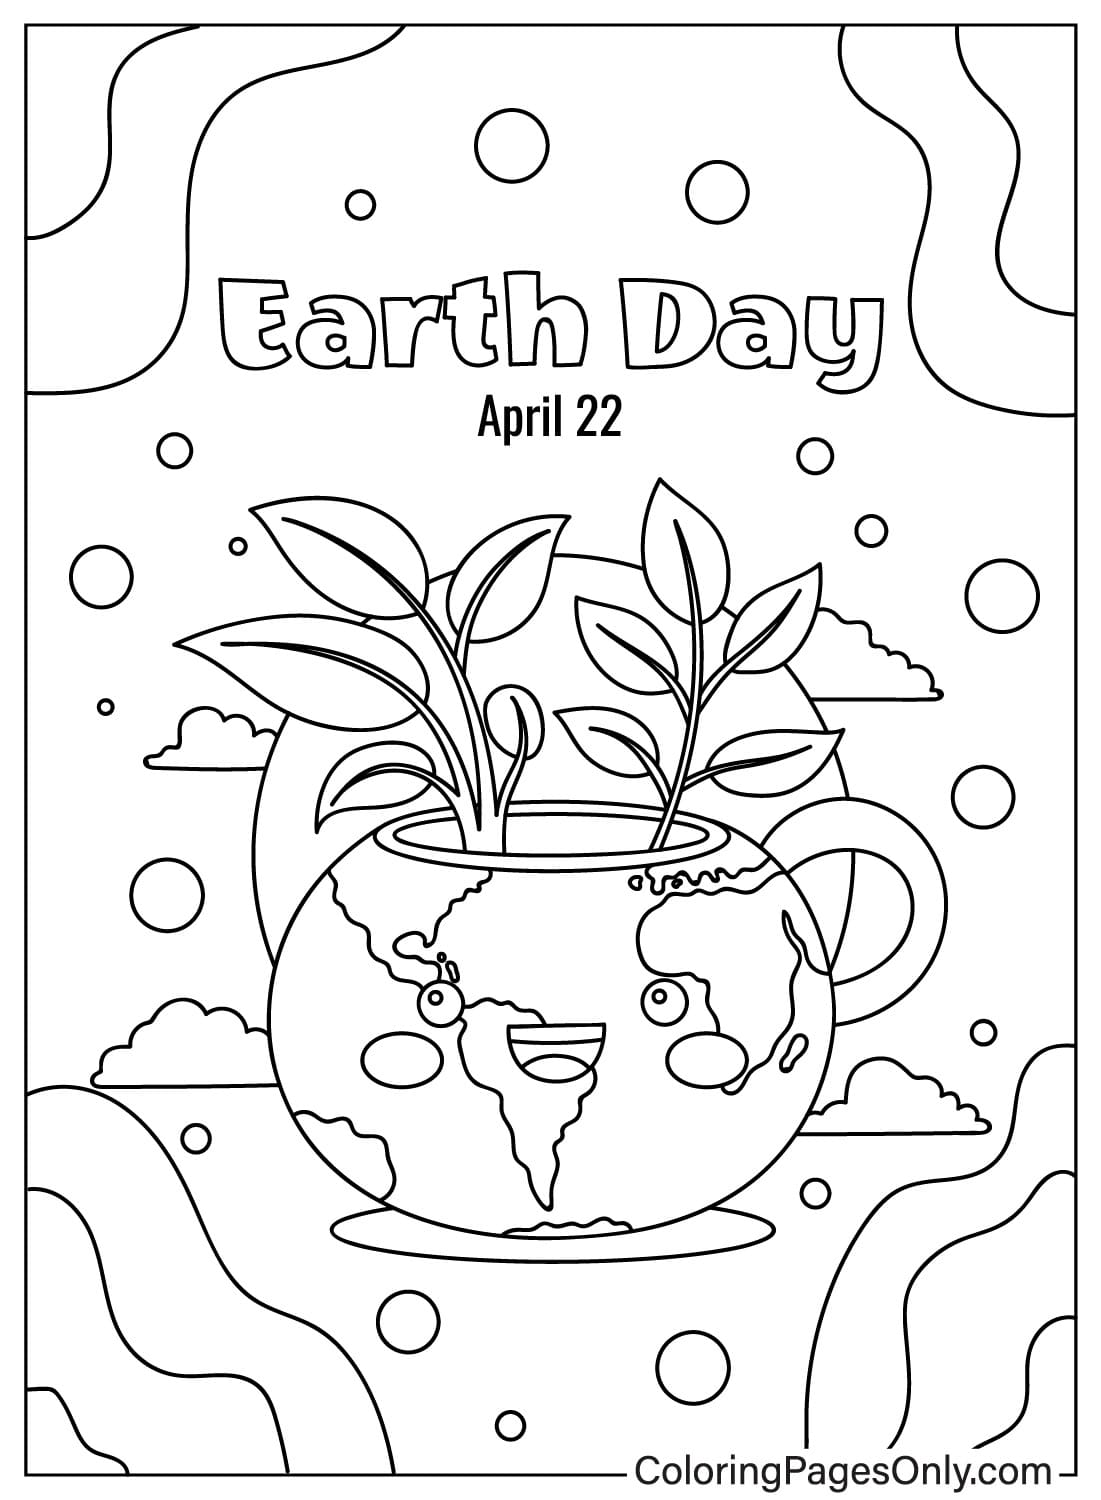 صفحة تلوين يوم الأرض JPG من يوم الأرض